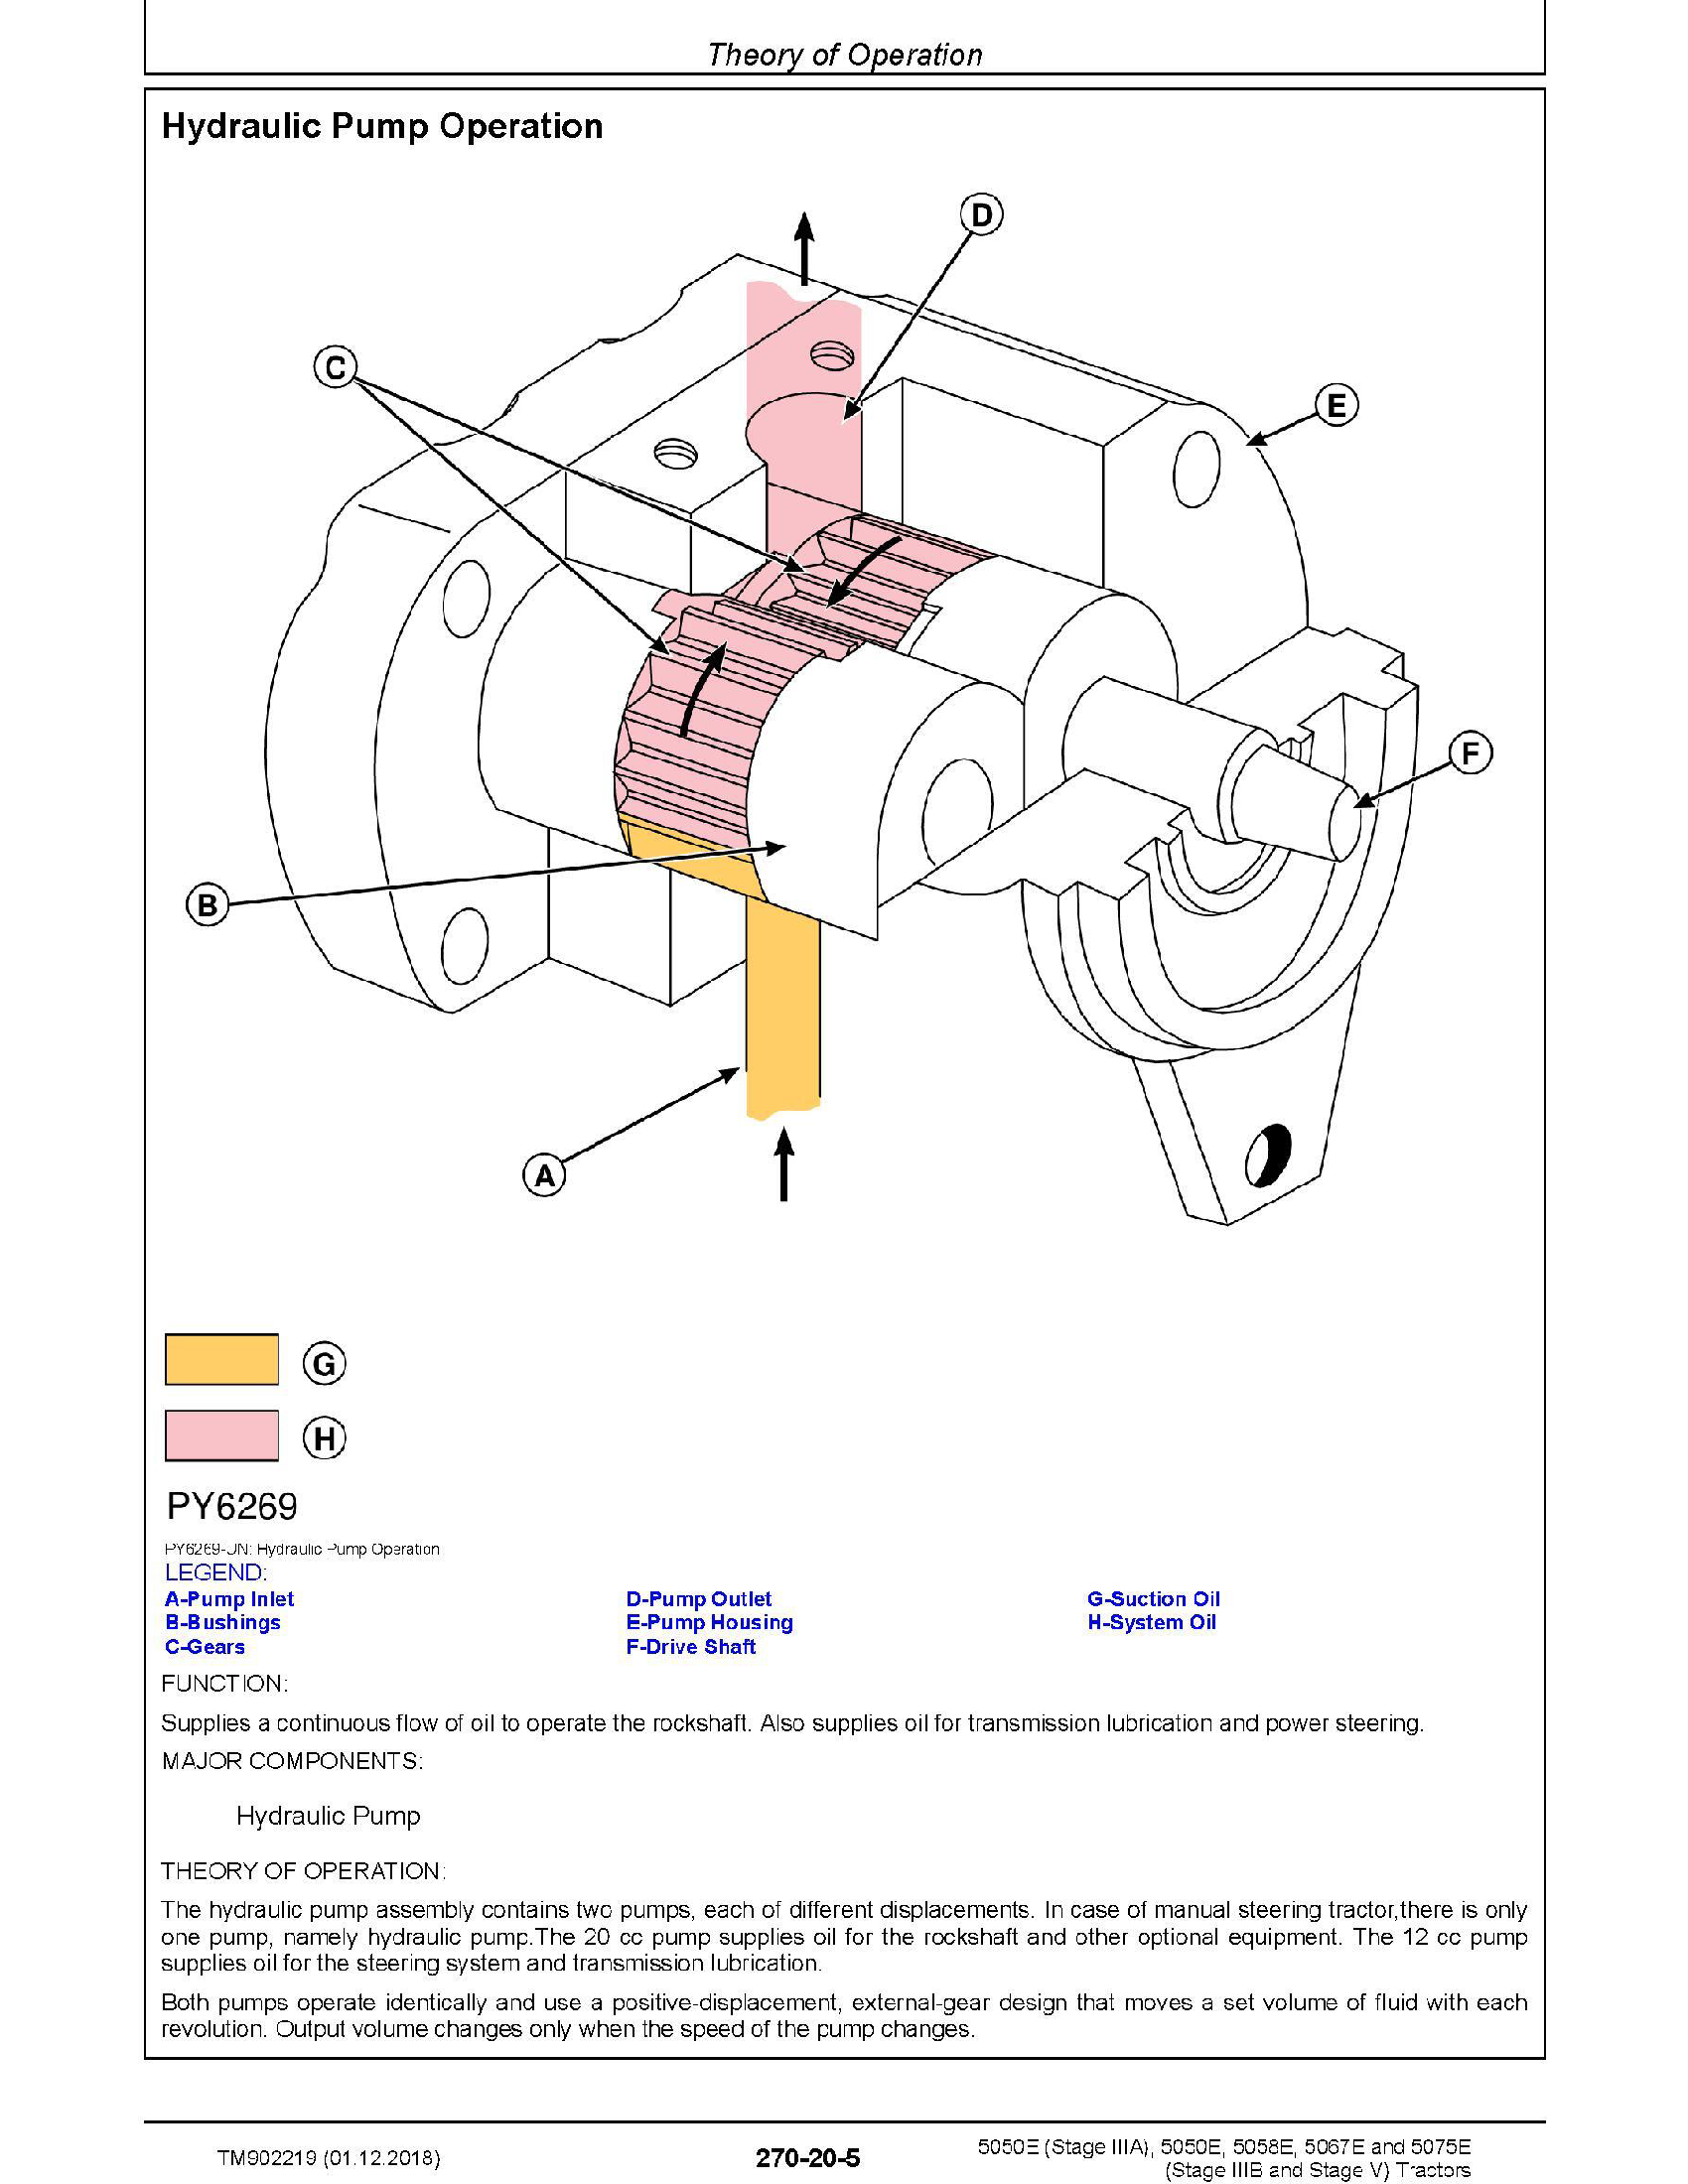 John Deere R4045 manual pdf